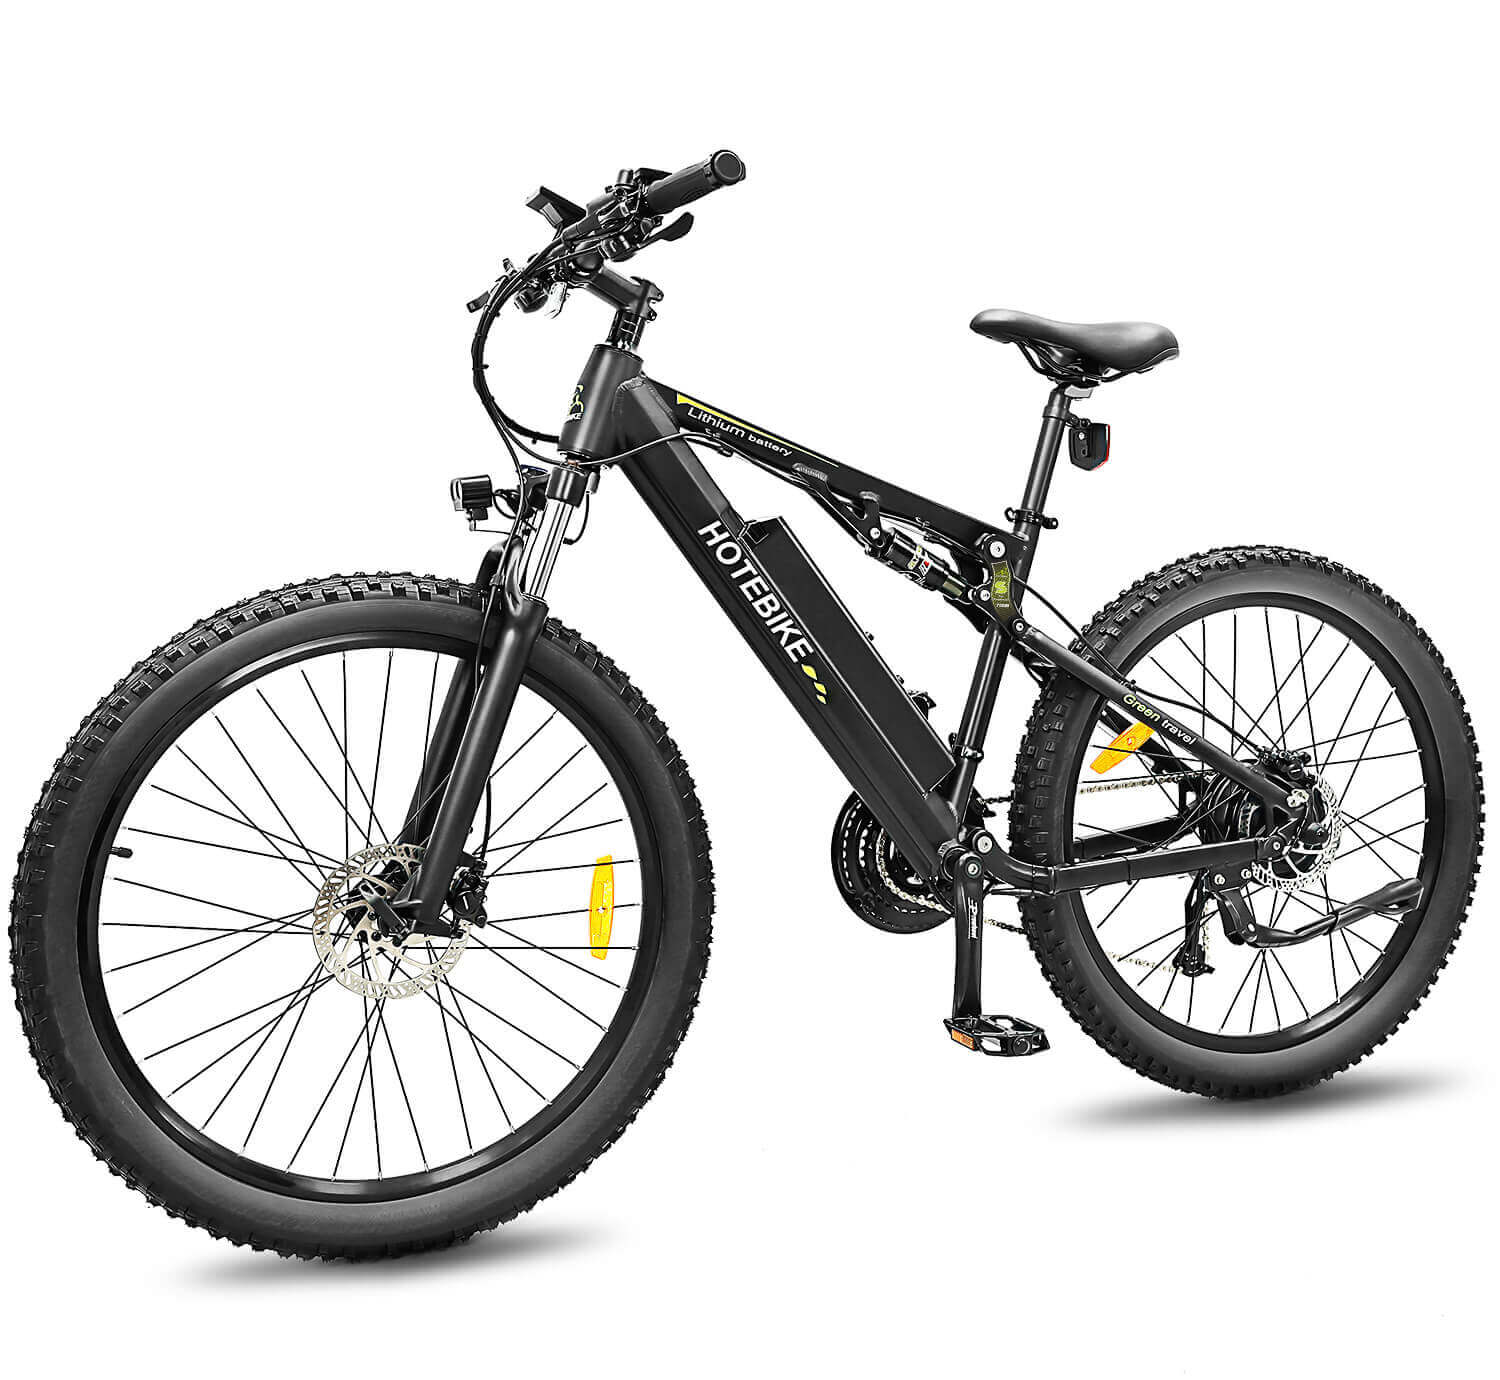 Biçikletë malore për të rritur me pezullim të plotë 48V 14.4Ah Samsung E-Battery Bike